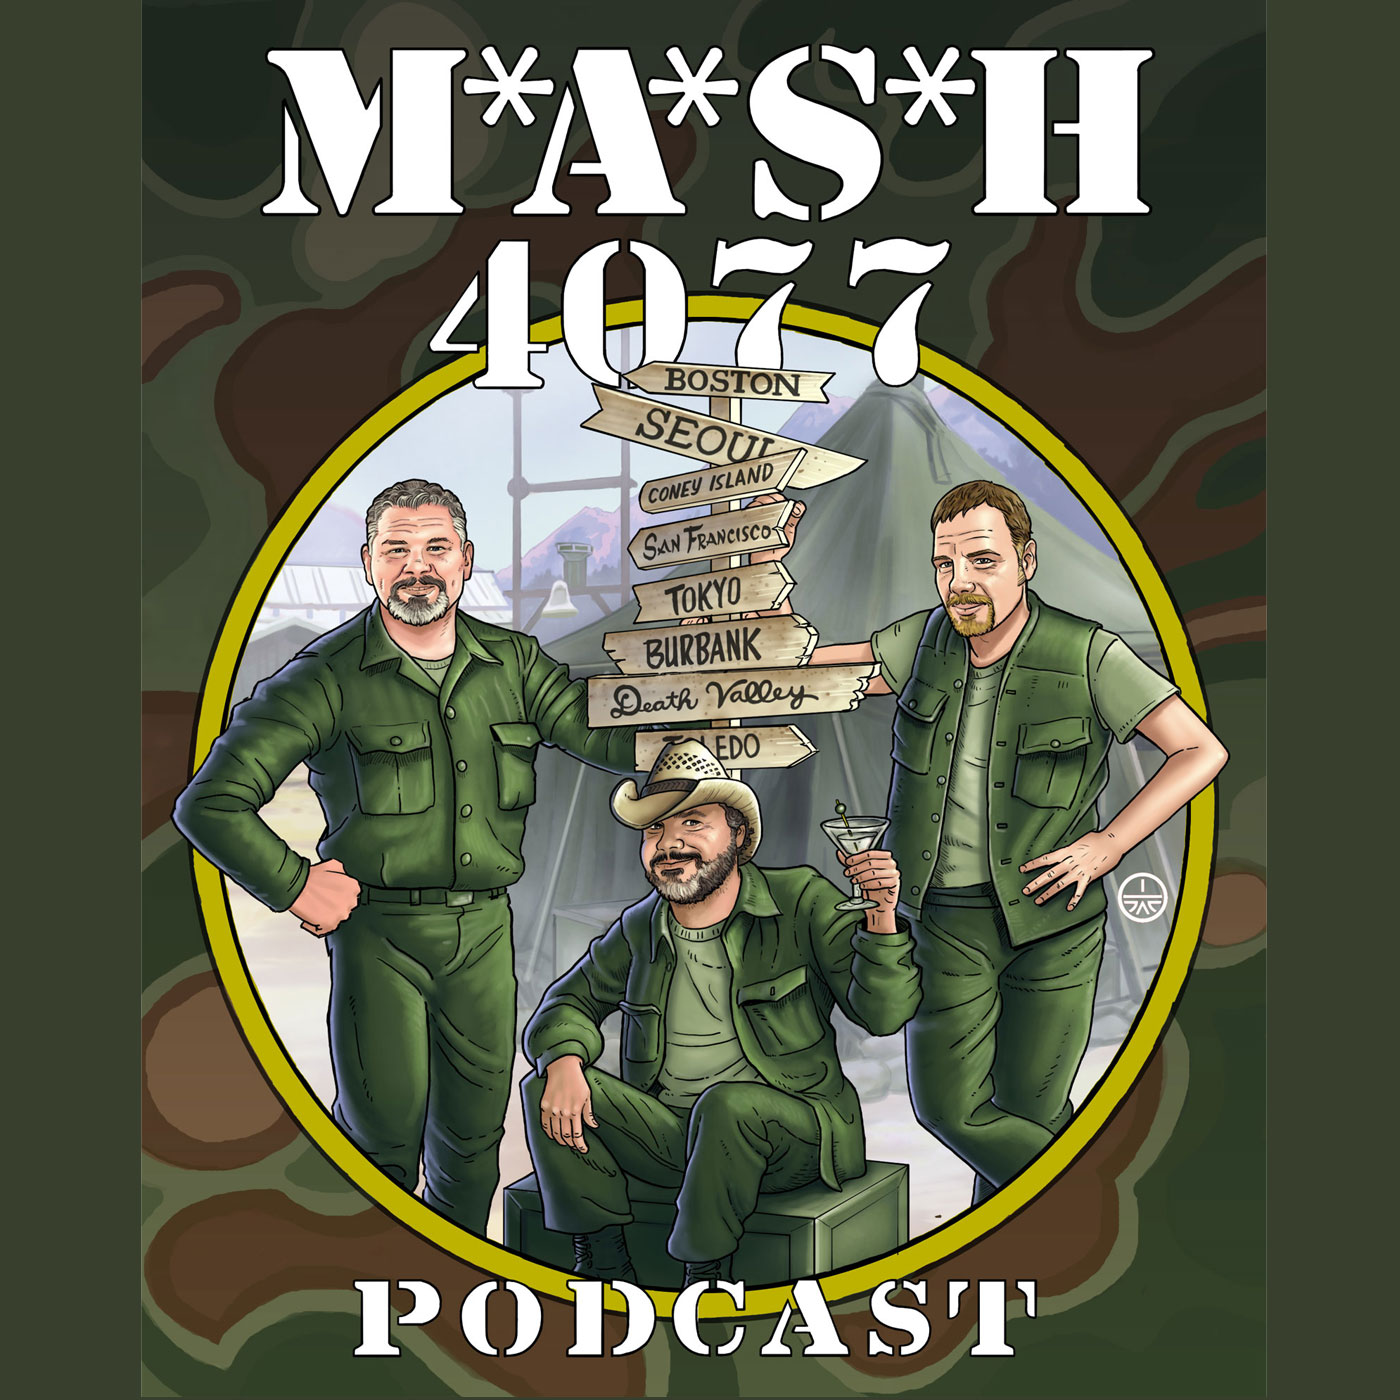 MASH 4077 Podcast Episode 102